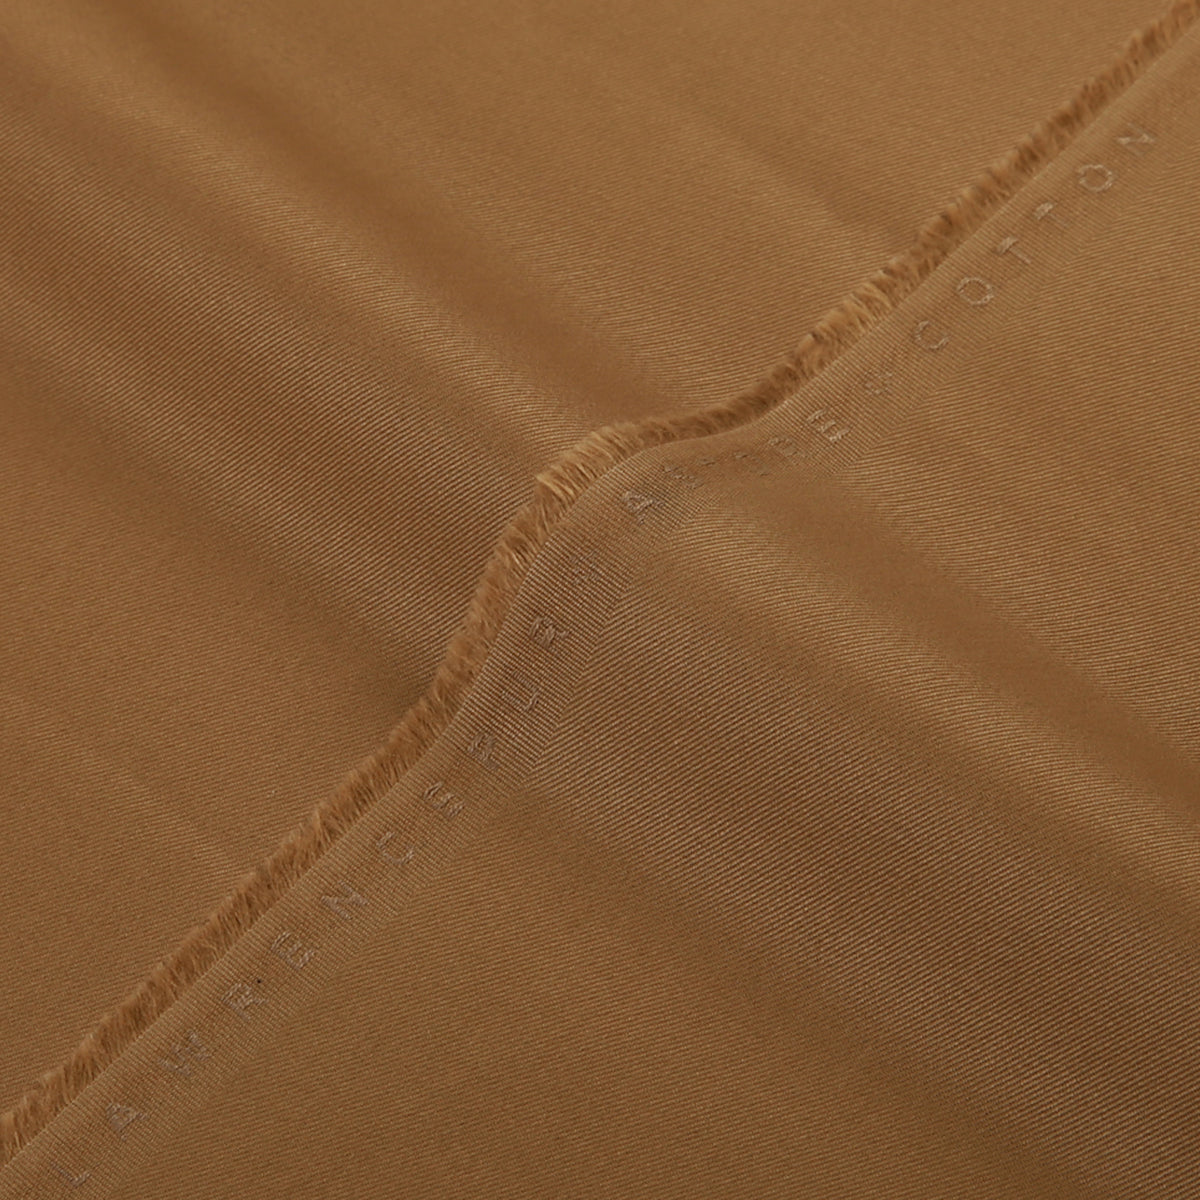 Plain-Khaki, Astore Cotton Trousering Fabric